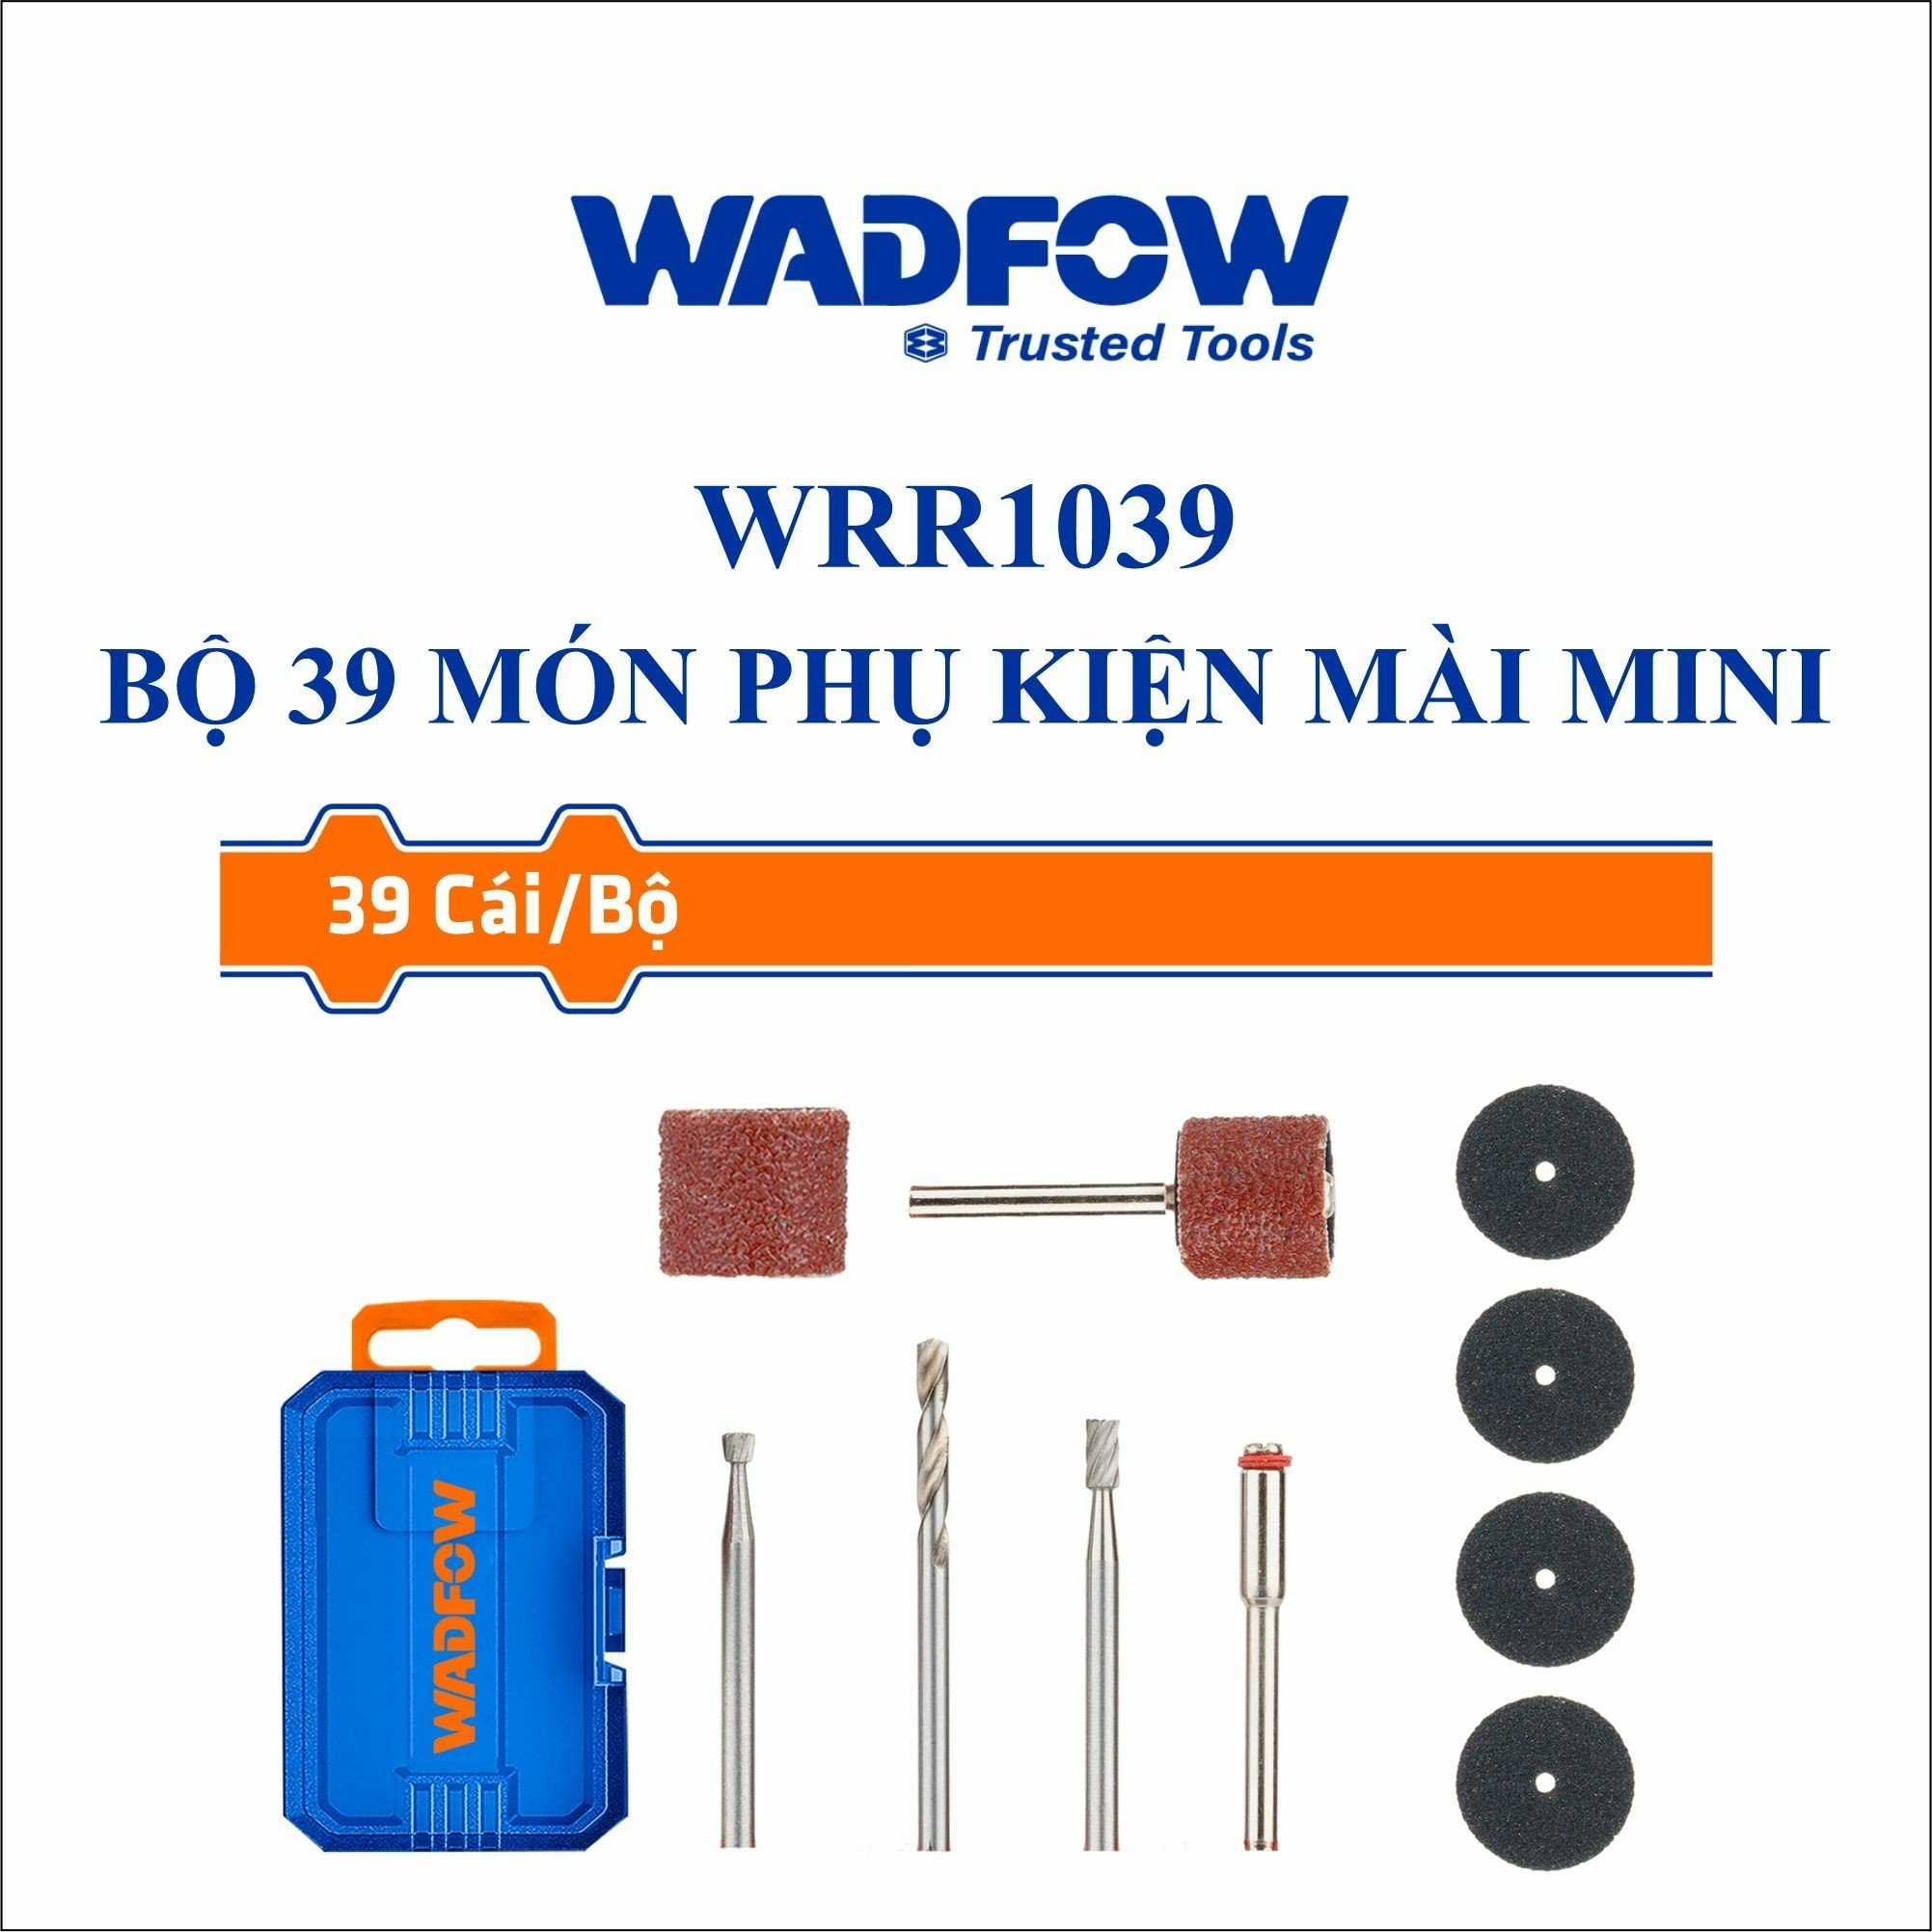 Hình ảnh 2 của mặt hàng Bộ 39 món phụ kiện mài mini Wadfow WRR1039